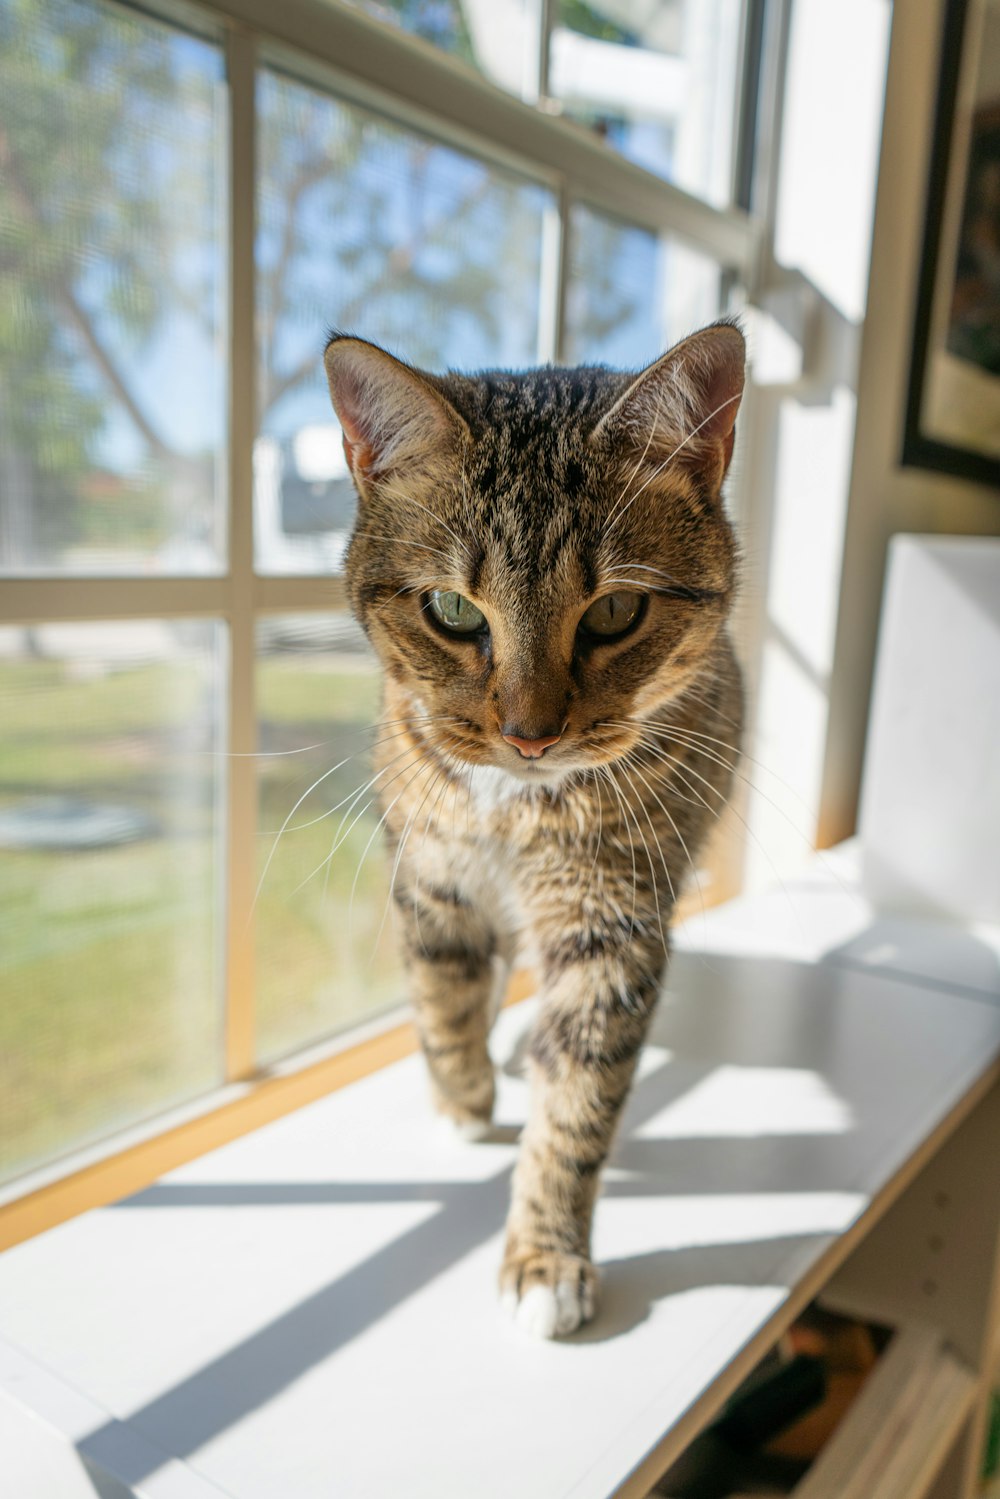 a cat is walking on a window sill